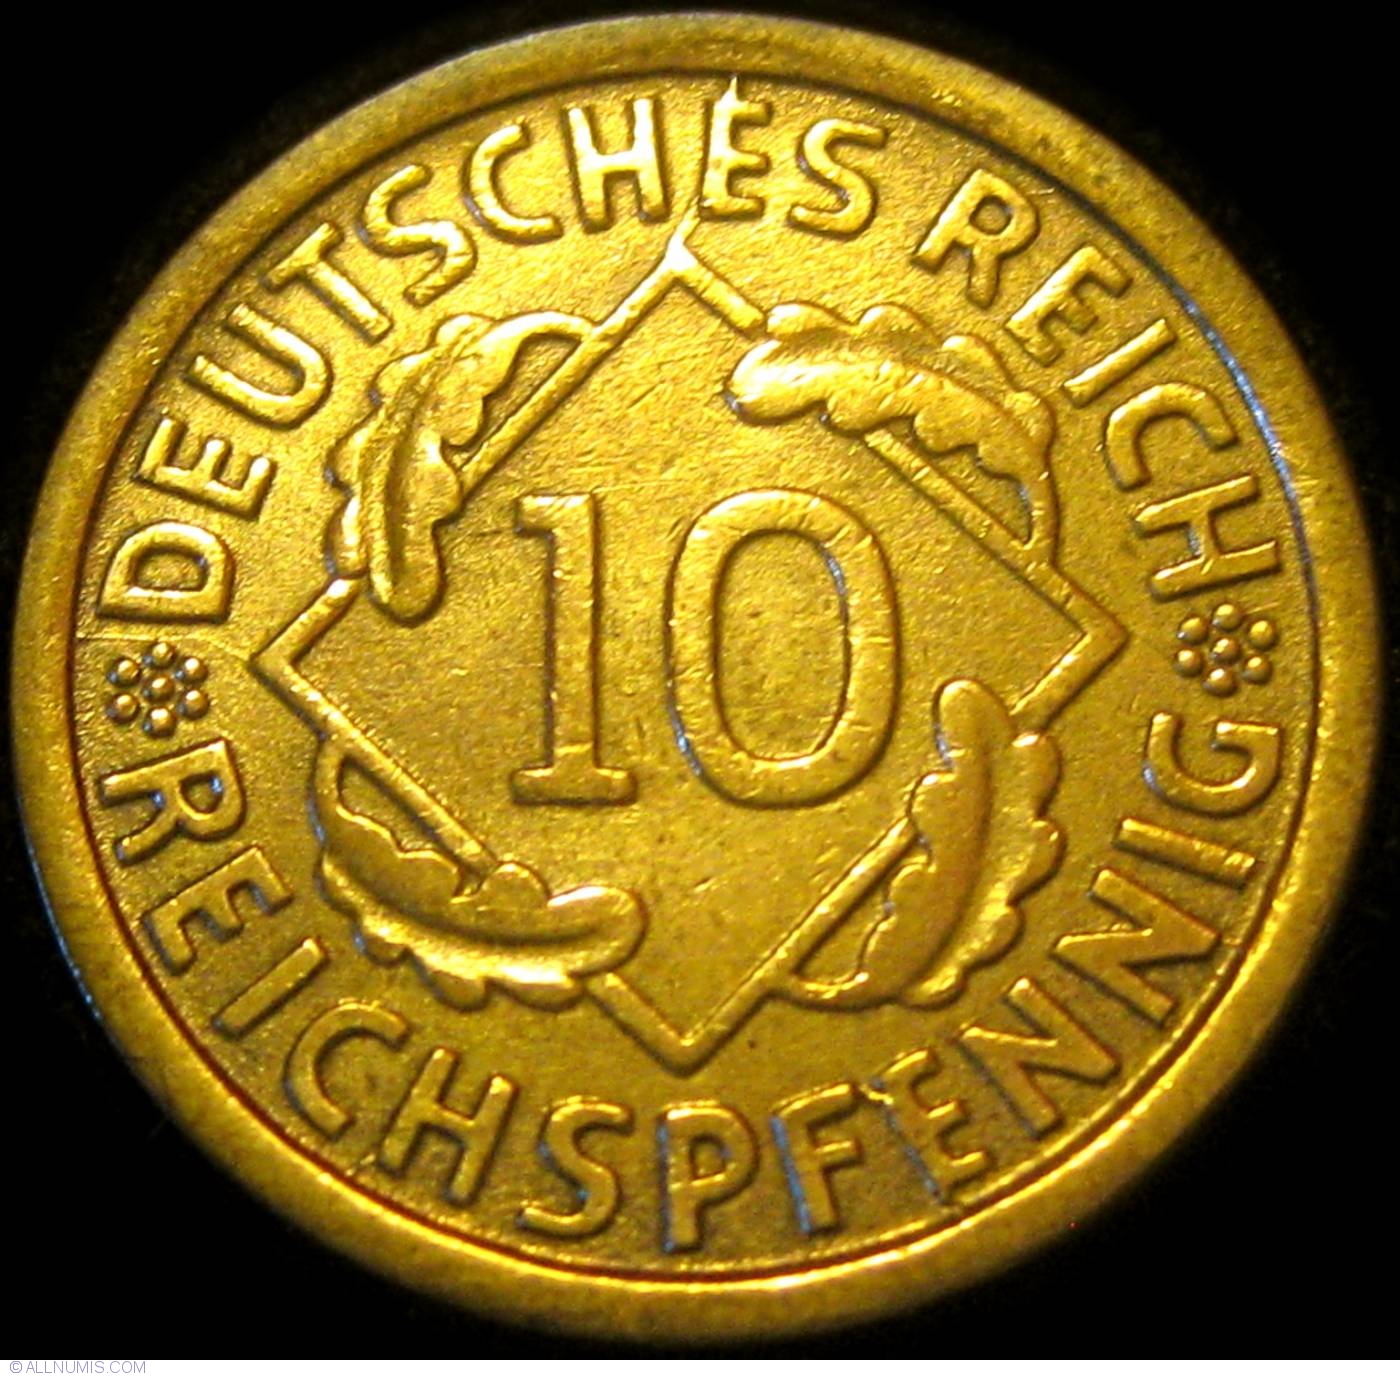 10 Reichspfennig 1925 J, Weimar Republic (1919-1932) - Germany - Coin